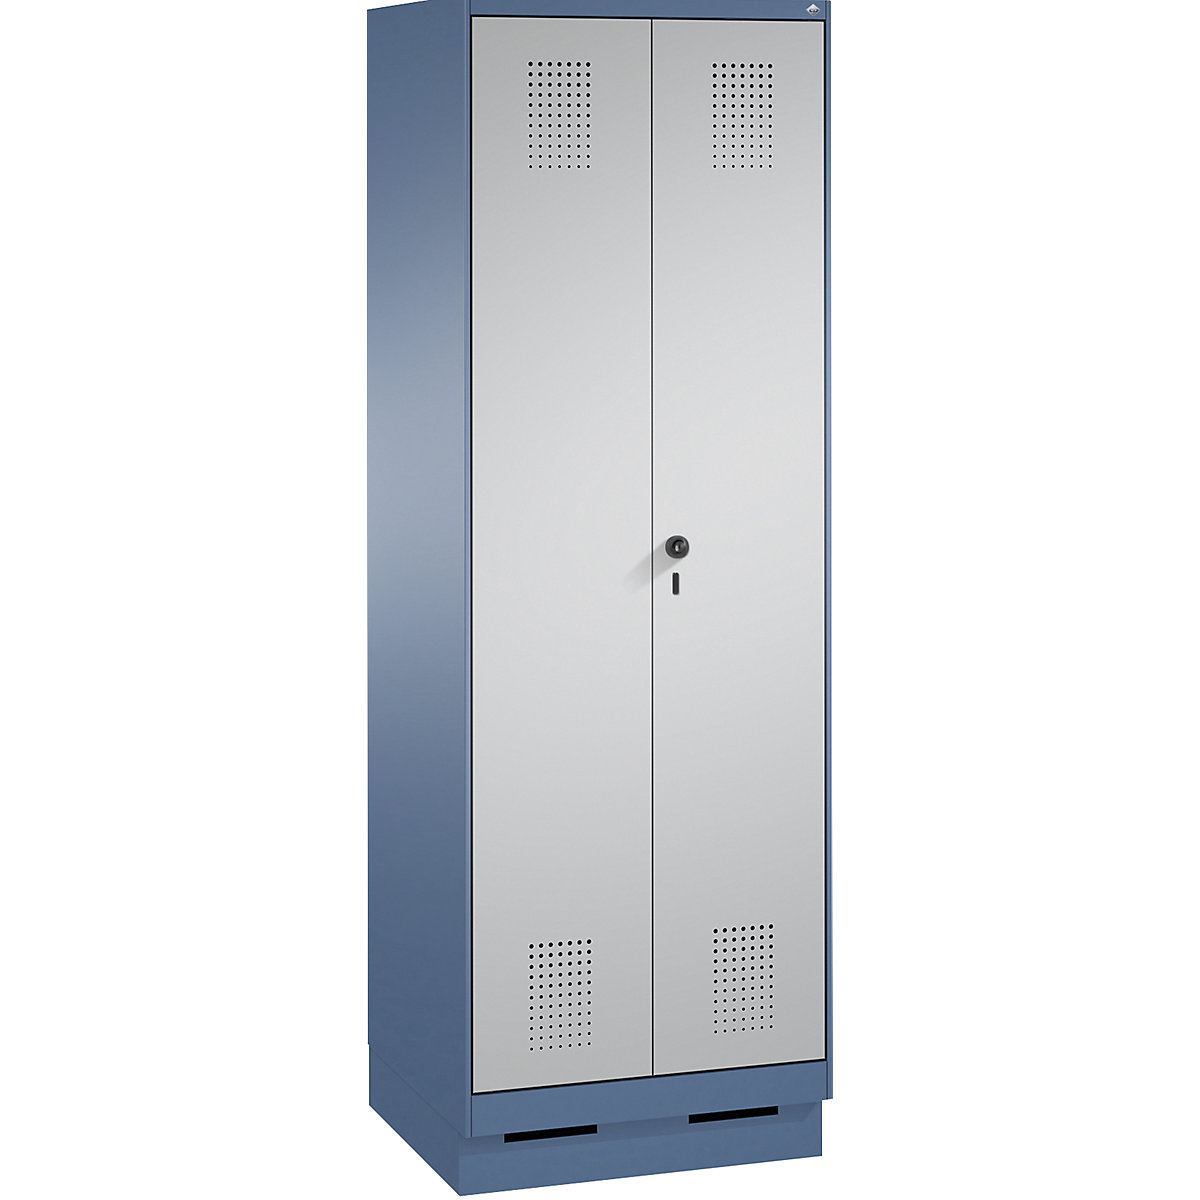 Szafa szatniowa EVOLO, drzwi zamykane do siebie – C+P, 2 przedziały, szer. przedziału 300 mm, z cokołem, niebiesko-mglista / biały aluminium-10